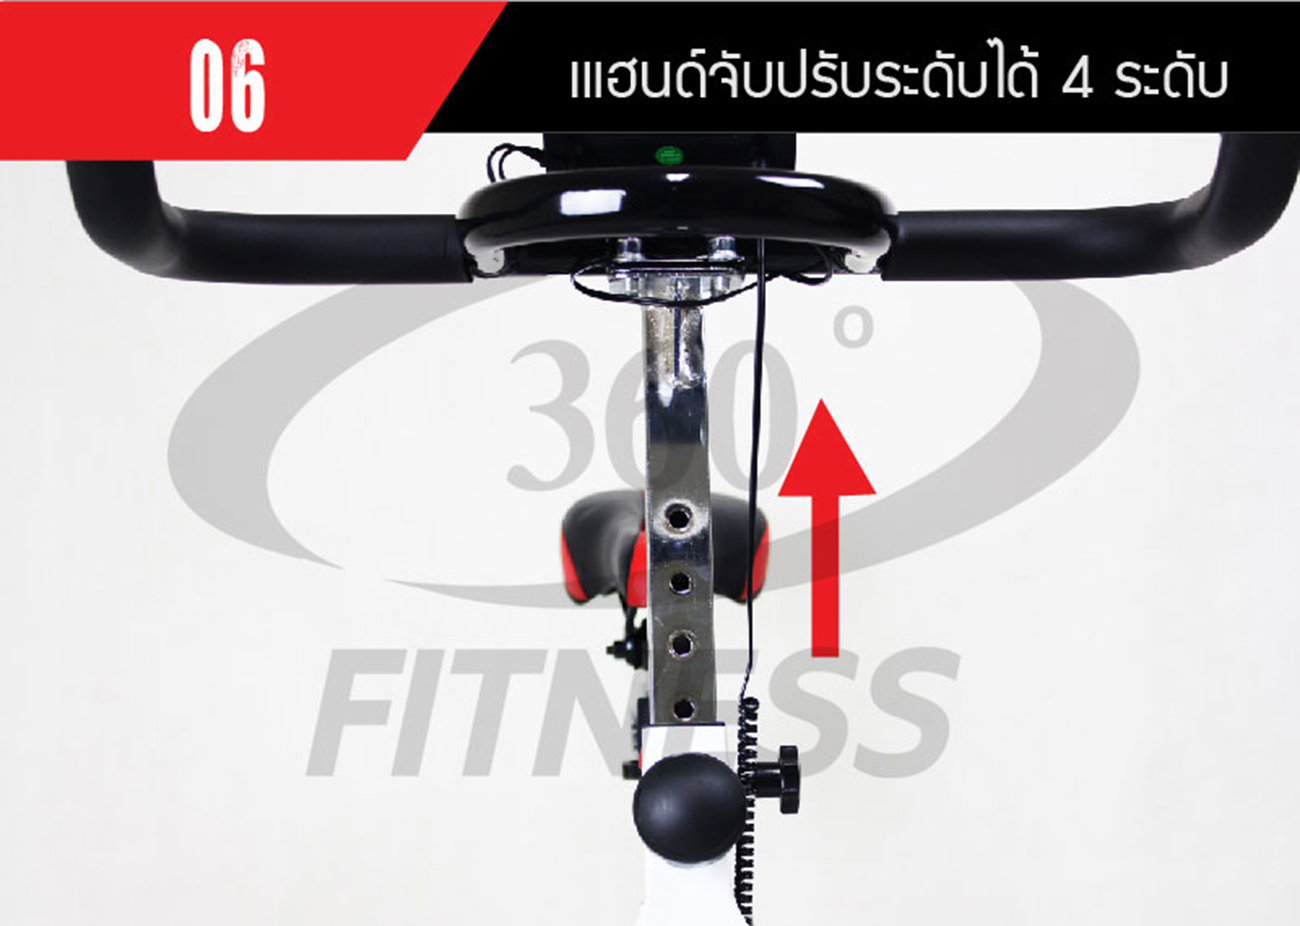 จักรยานปั่นออกกำลังกาย Spin Bike 15KG. รุ่น AM-S1000